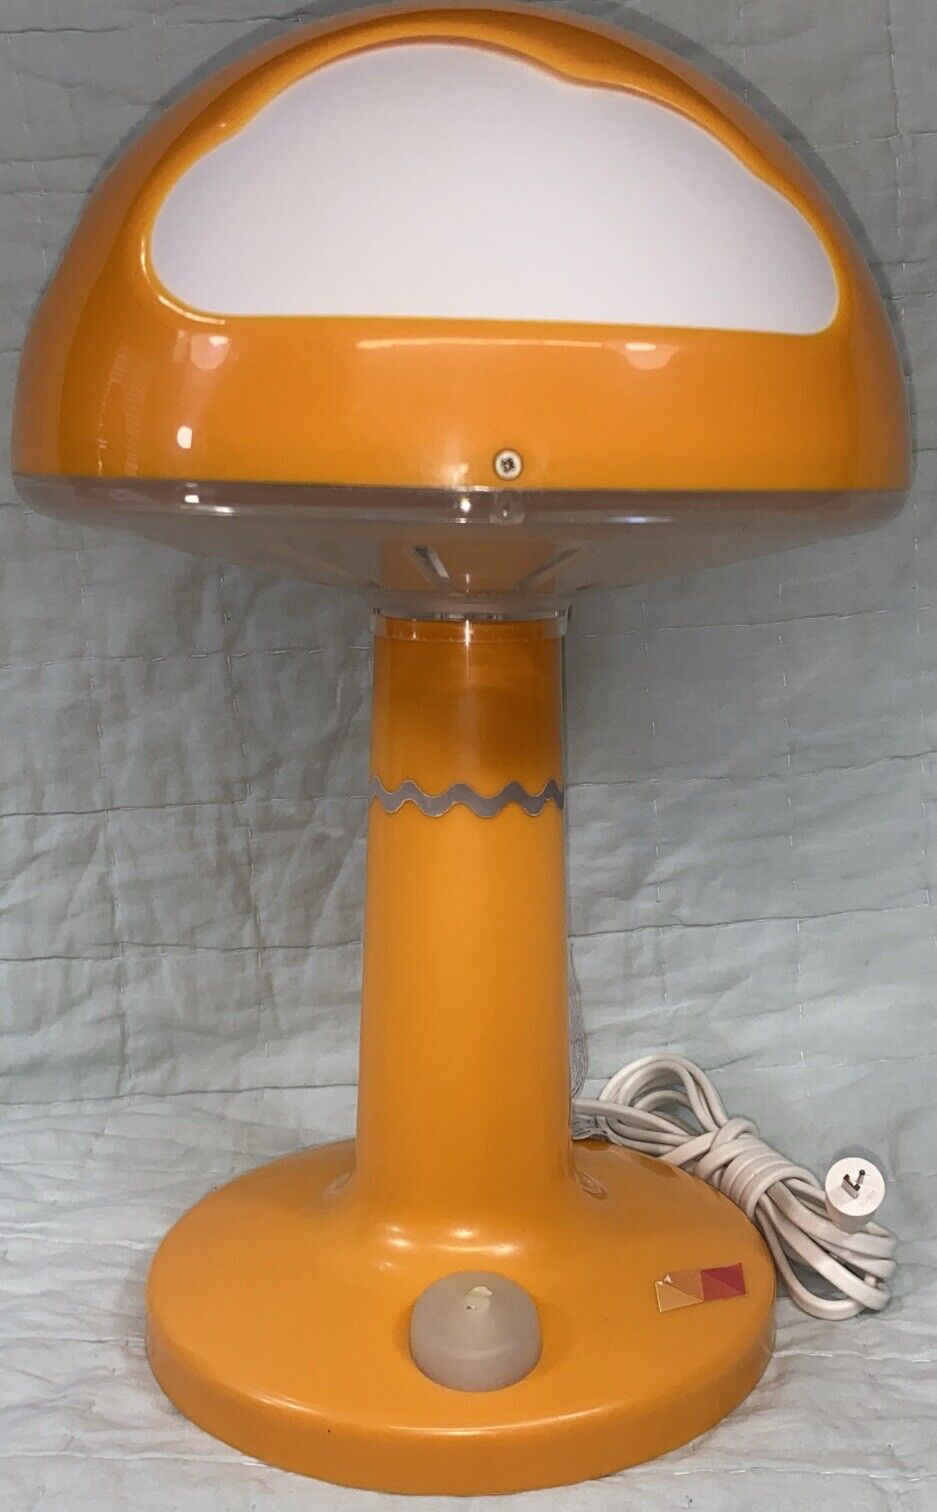 Ikea Skojig Orange & White Mushroom Cloud Lamp Retro Mod MCM ~ NO PLUG UNTESTED